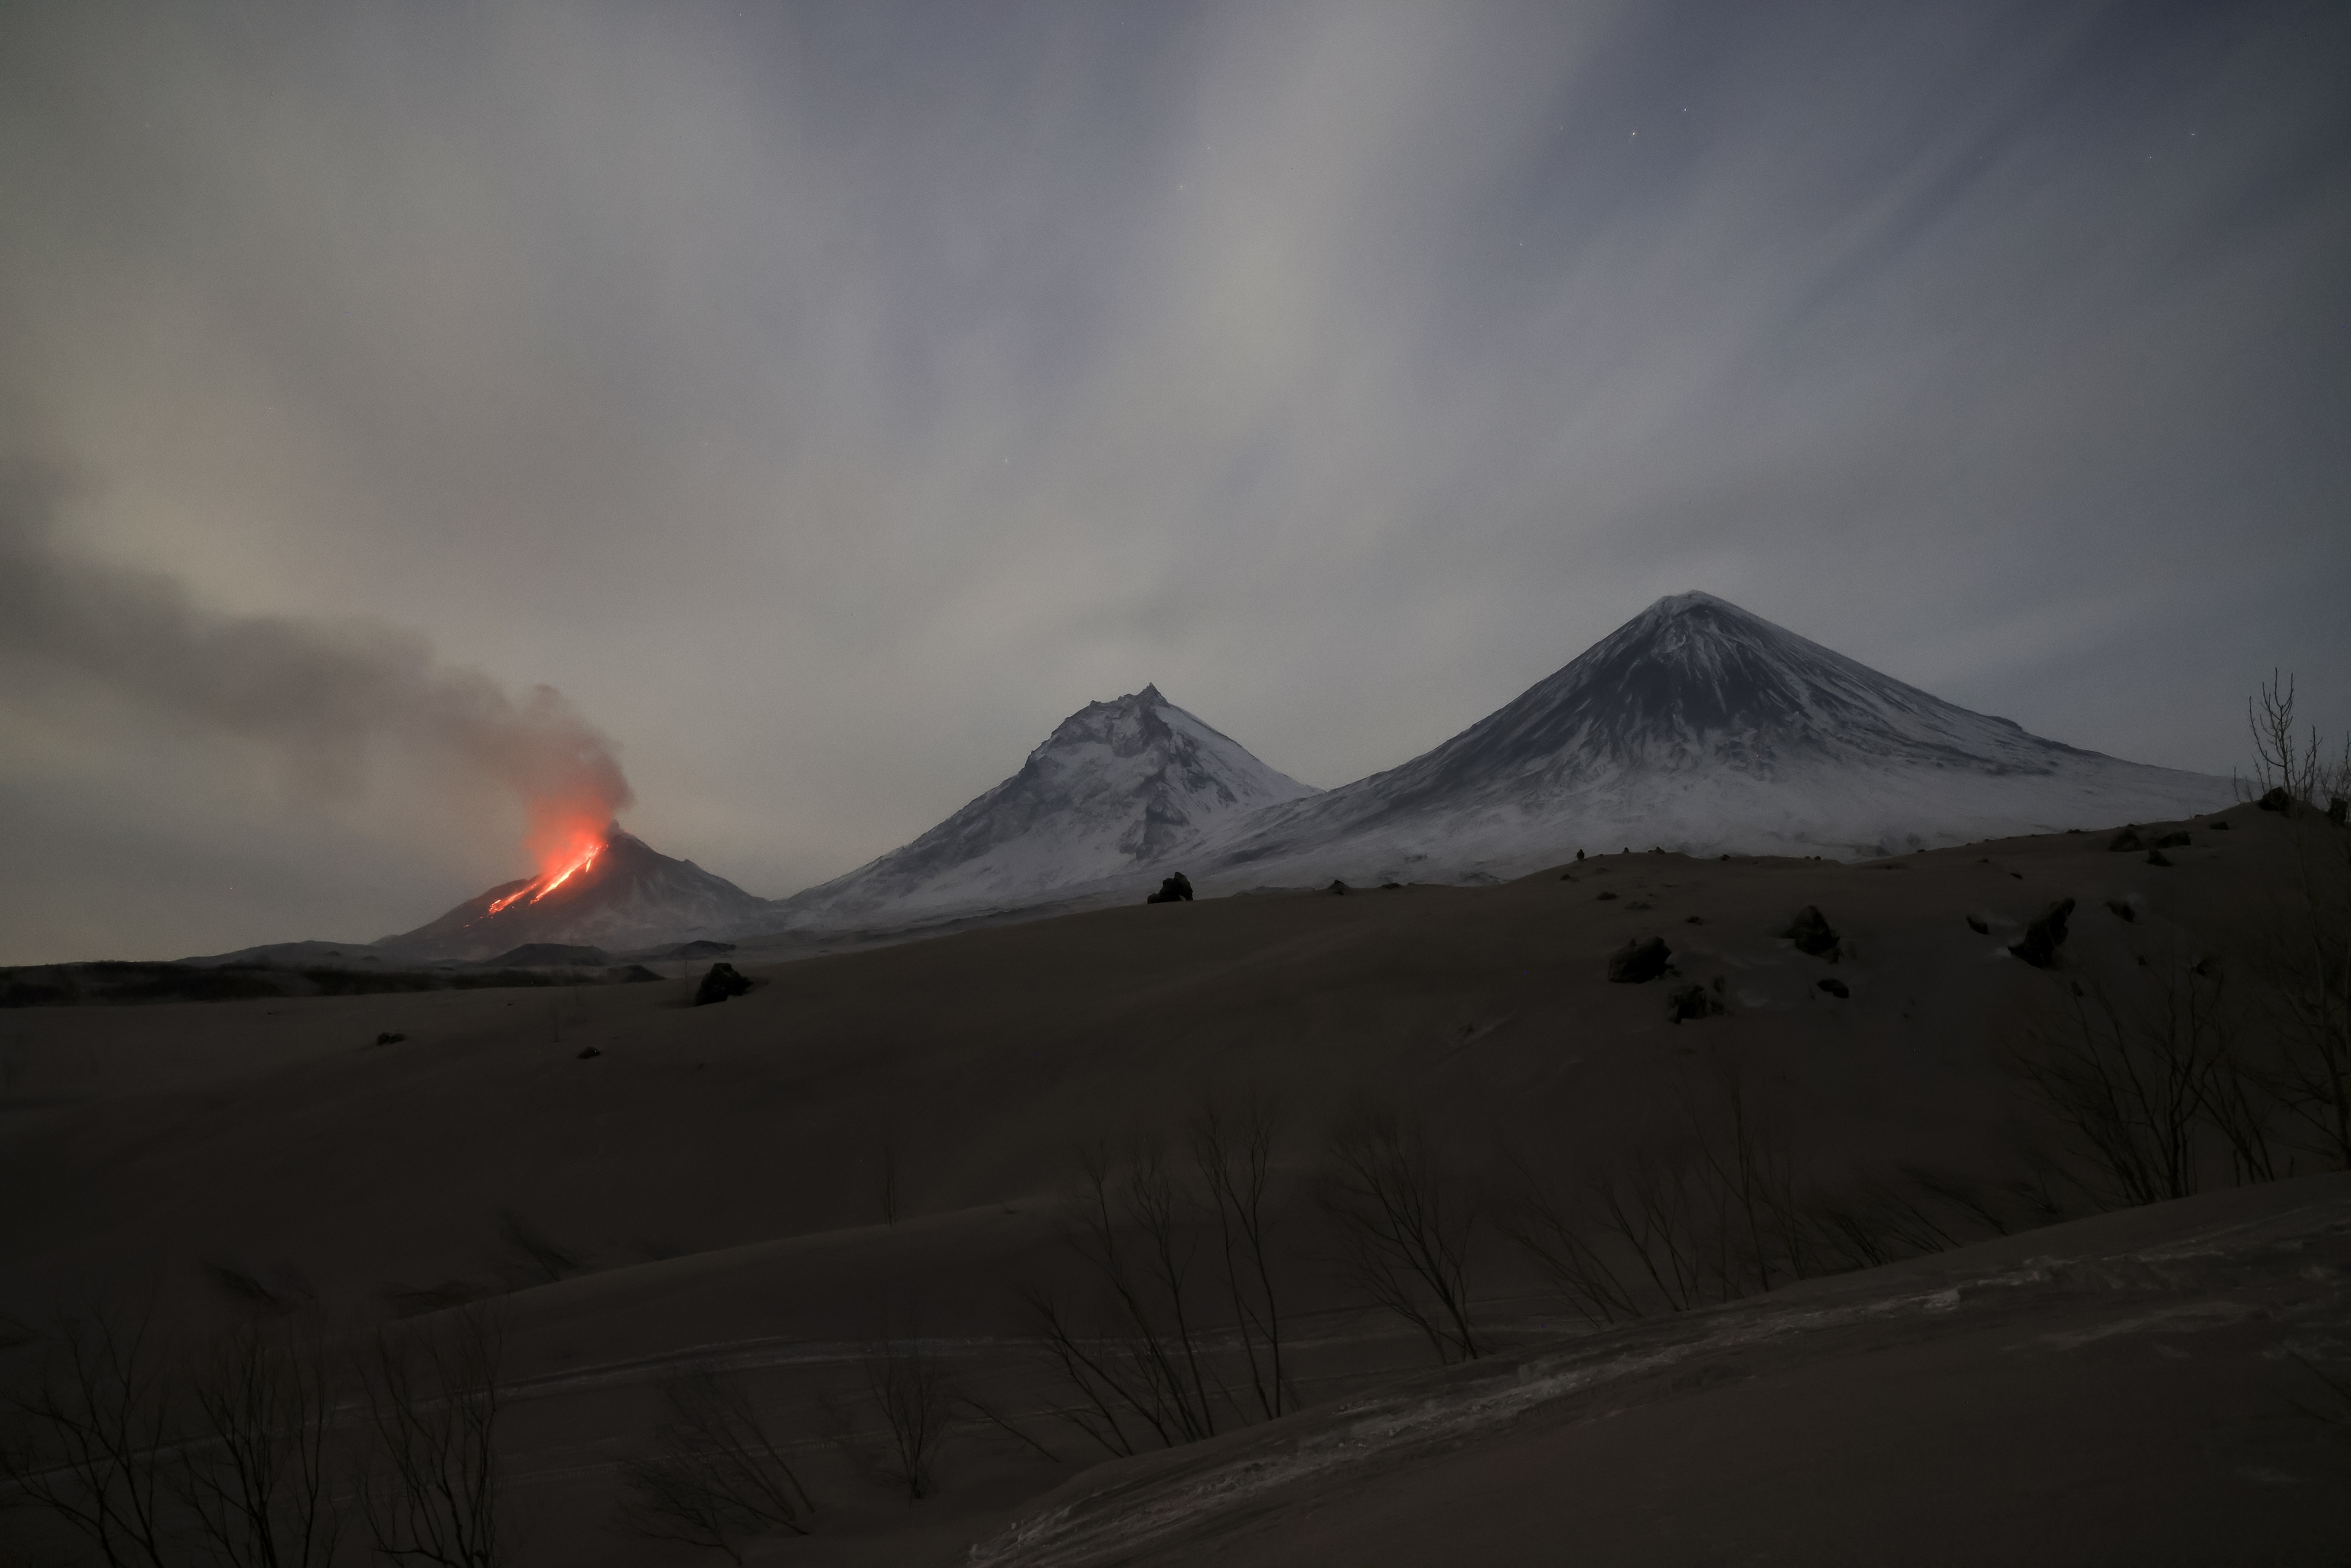 Lava y vapores son visibles durante la erupcin del volcn Bezymianny, izquierda, con el volcn Kamen, centro, y el volcn Klyuchevskaya sopka, derecha, en la pennsula de Kamchatka en Rusia, sbado, 8 de abril de 2023. El viernes, el volcn Bezymyanny emiti cenizas de hasta 10.000 metros de altura. Al volcn se le asign el cdigo de peligro rojo para la aviacin. La pennsula de Kamchatka, que se adentra en el ocano Pacfico a unos 6.600 kilmetros al este de Mosc, es una de las zonas con mayor concentracin de actividad geotrmica del mundo, con unos 30 volcanes activos.